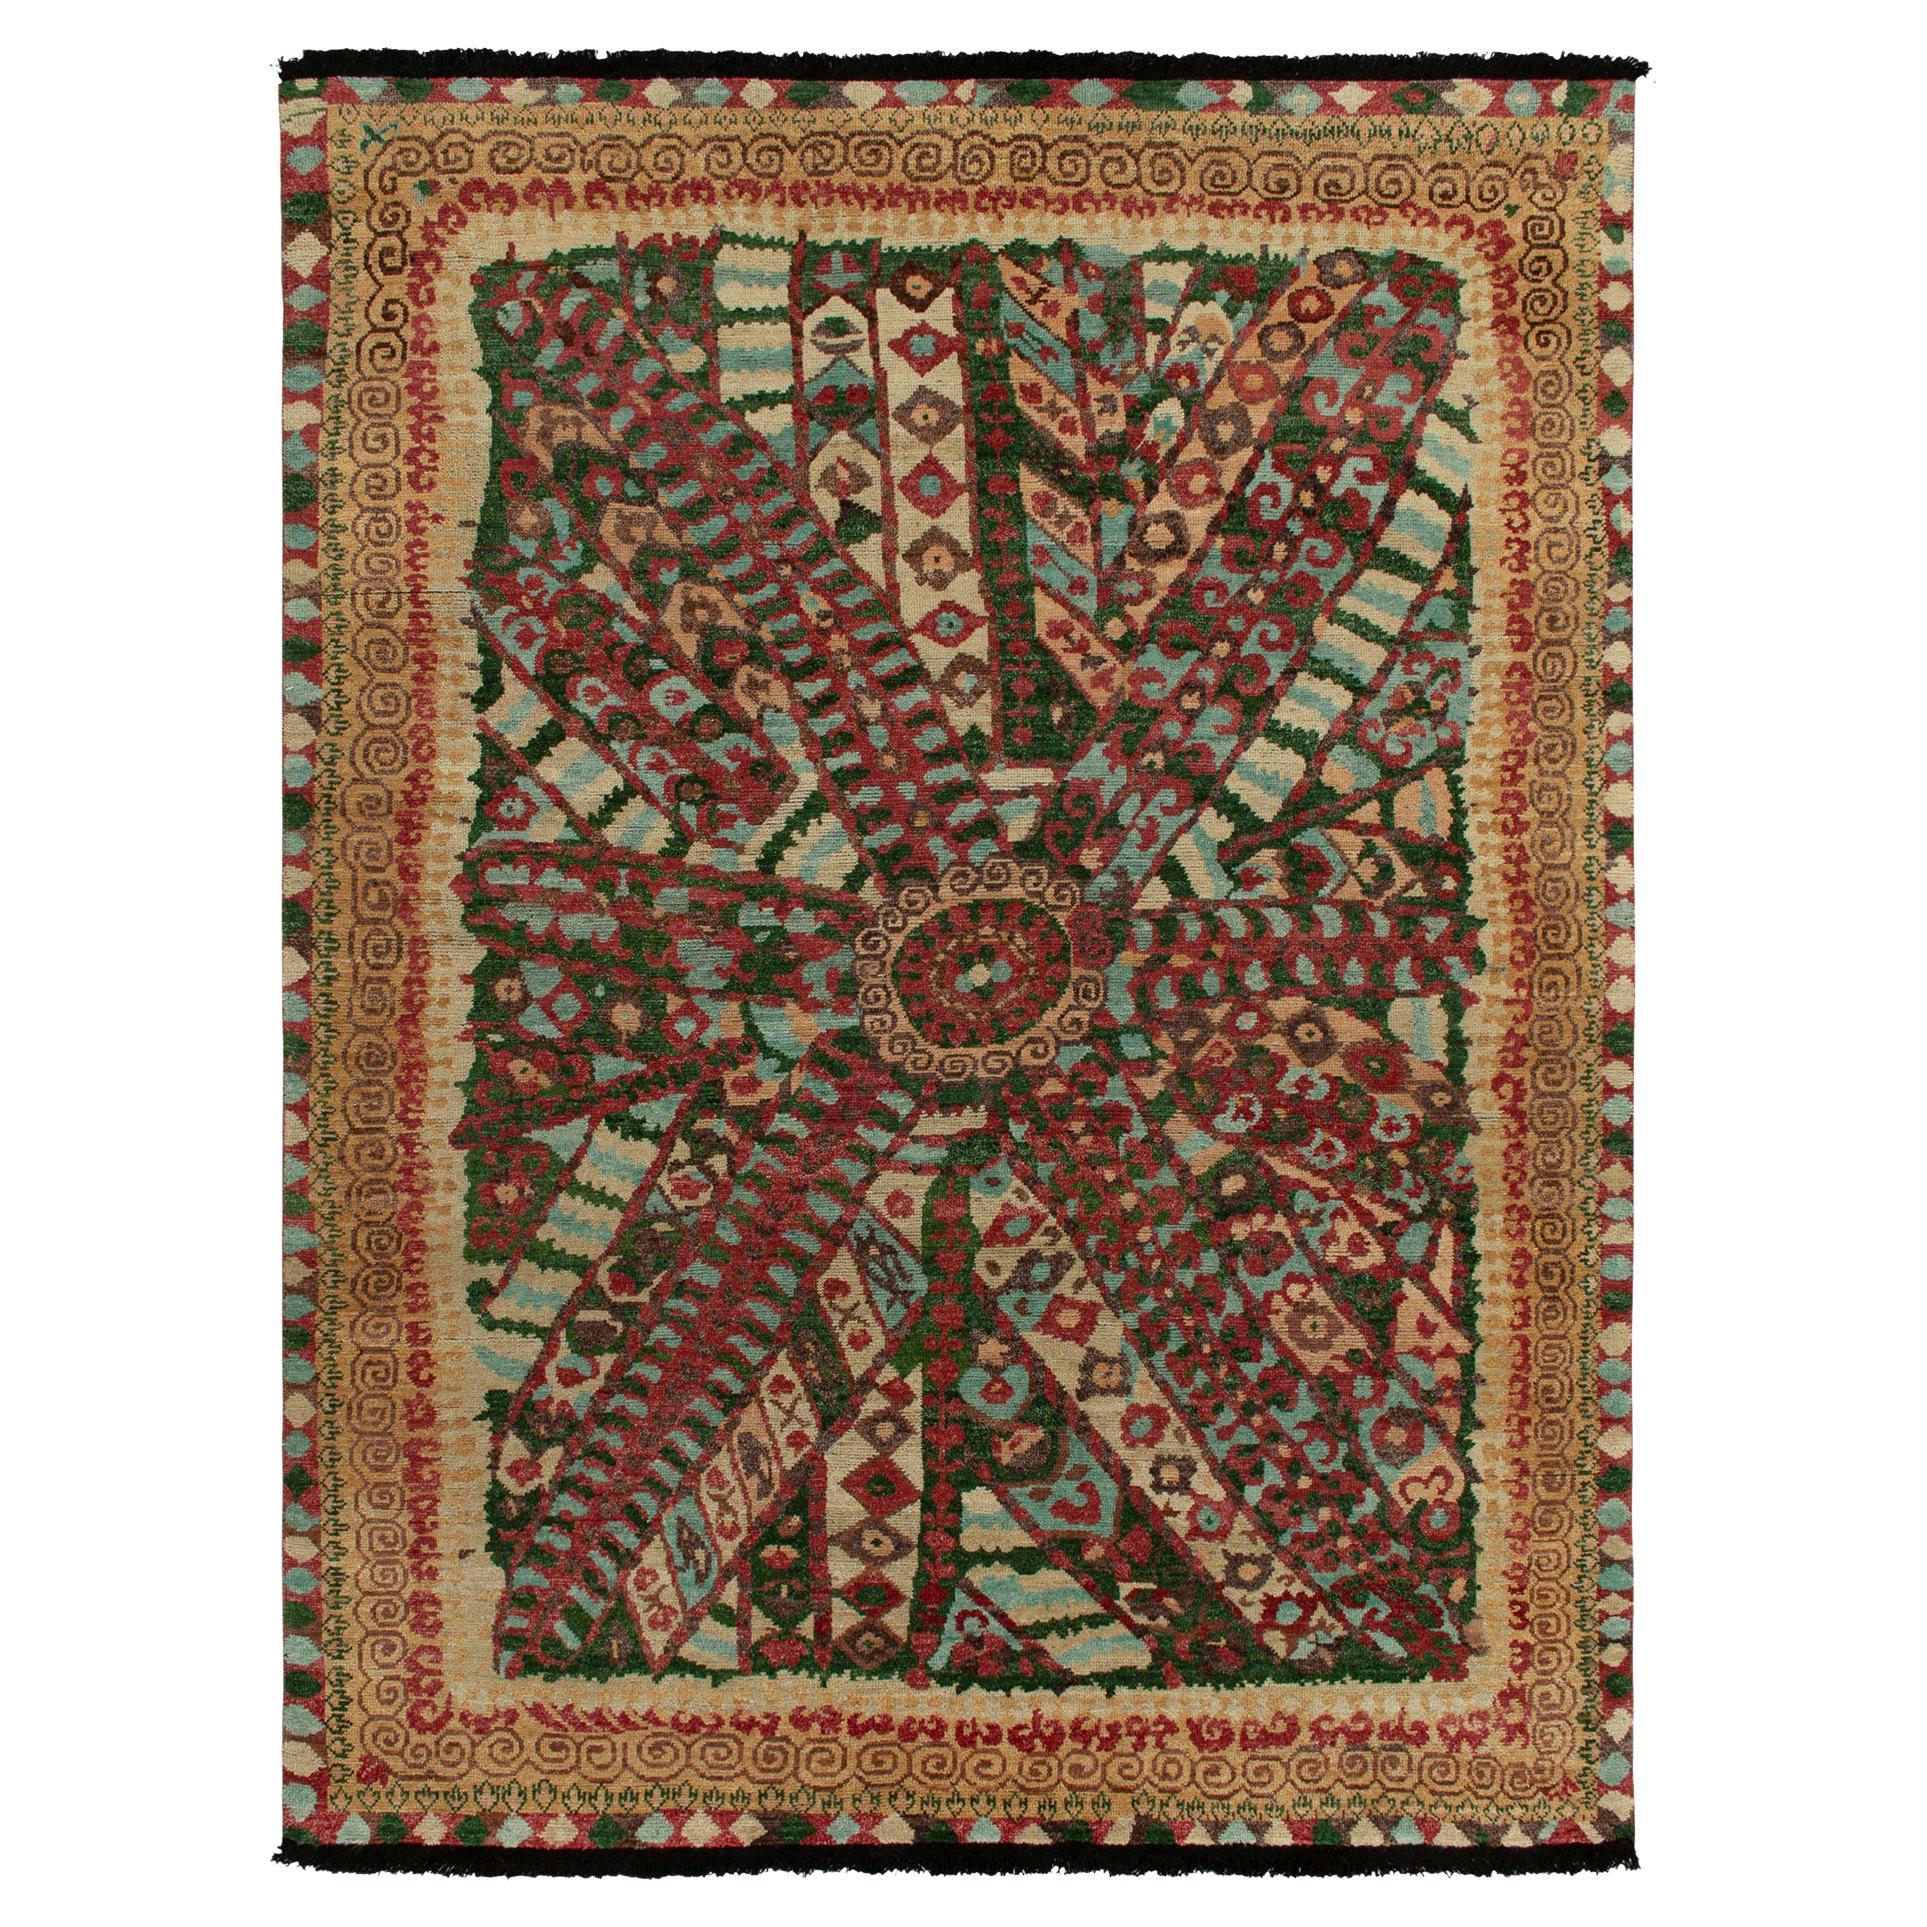 Tapis et tapis de style tribal de Kilim à motif géométrique rouge, vert et bordure beige